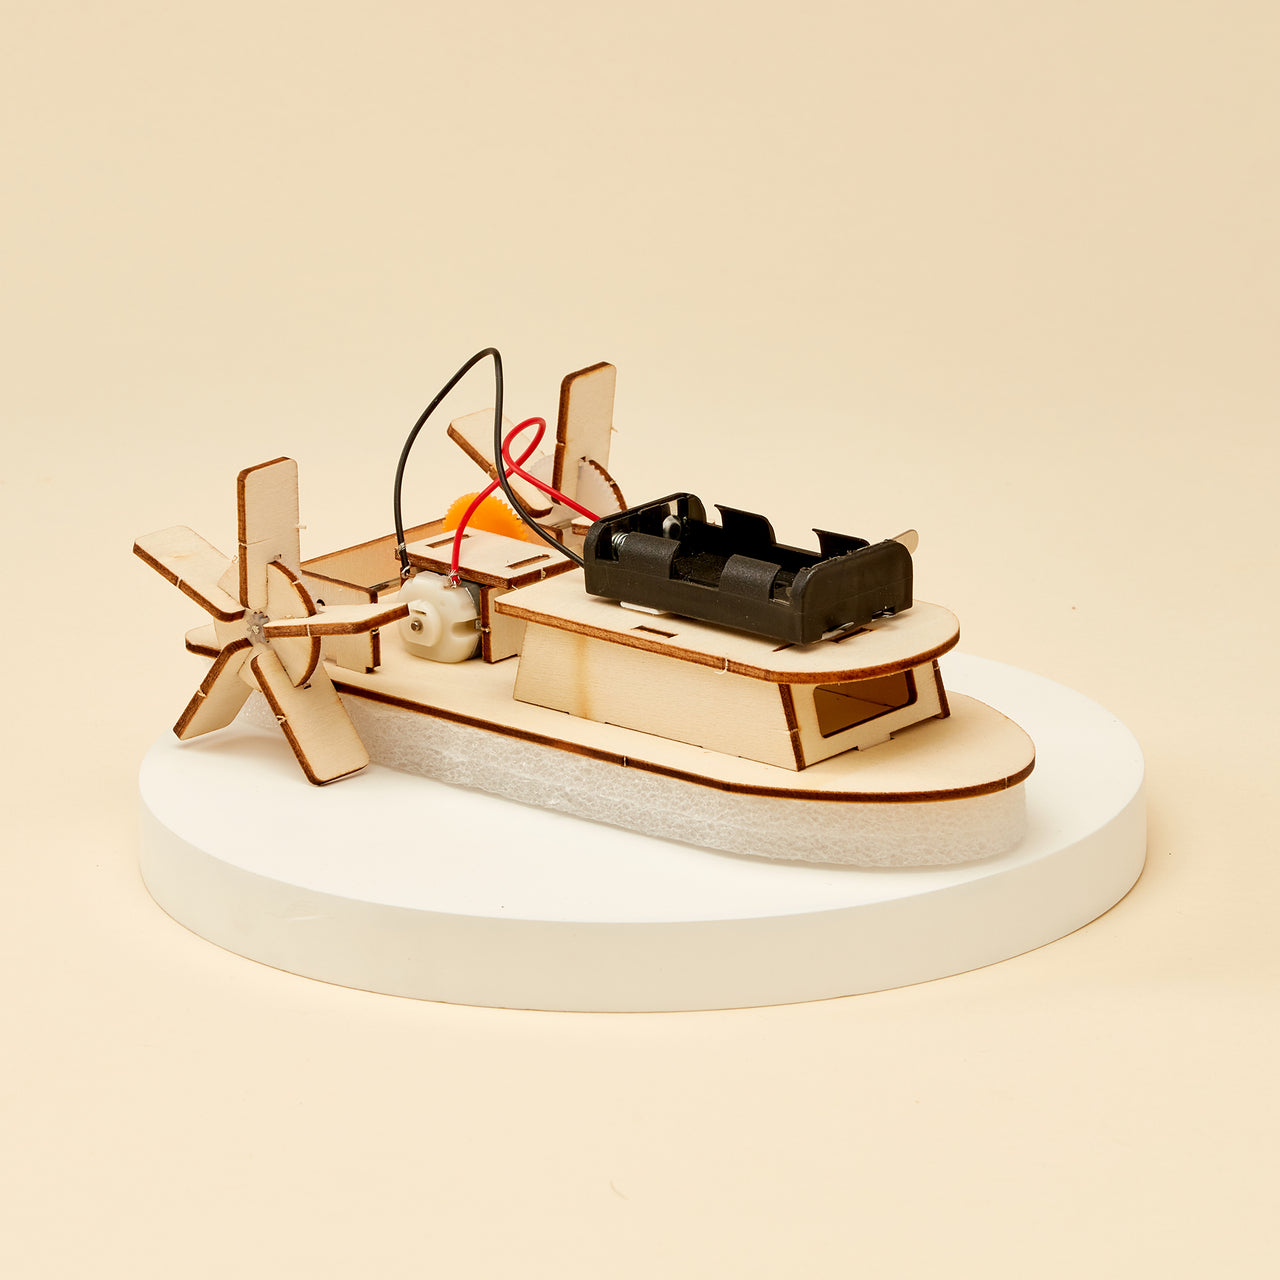 CreateKit Paddlewheel Boat DIY Kit